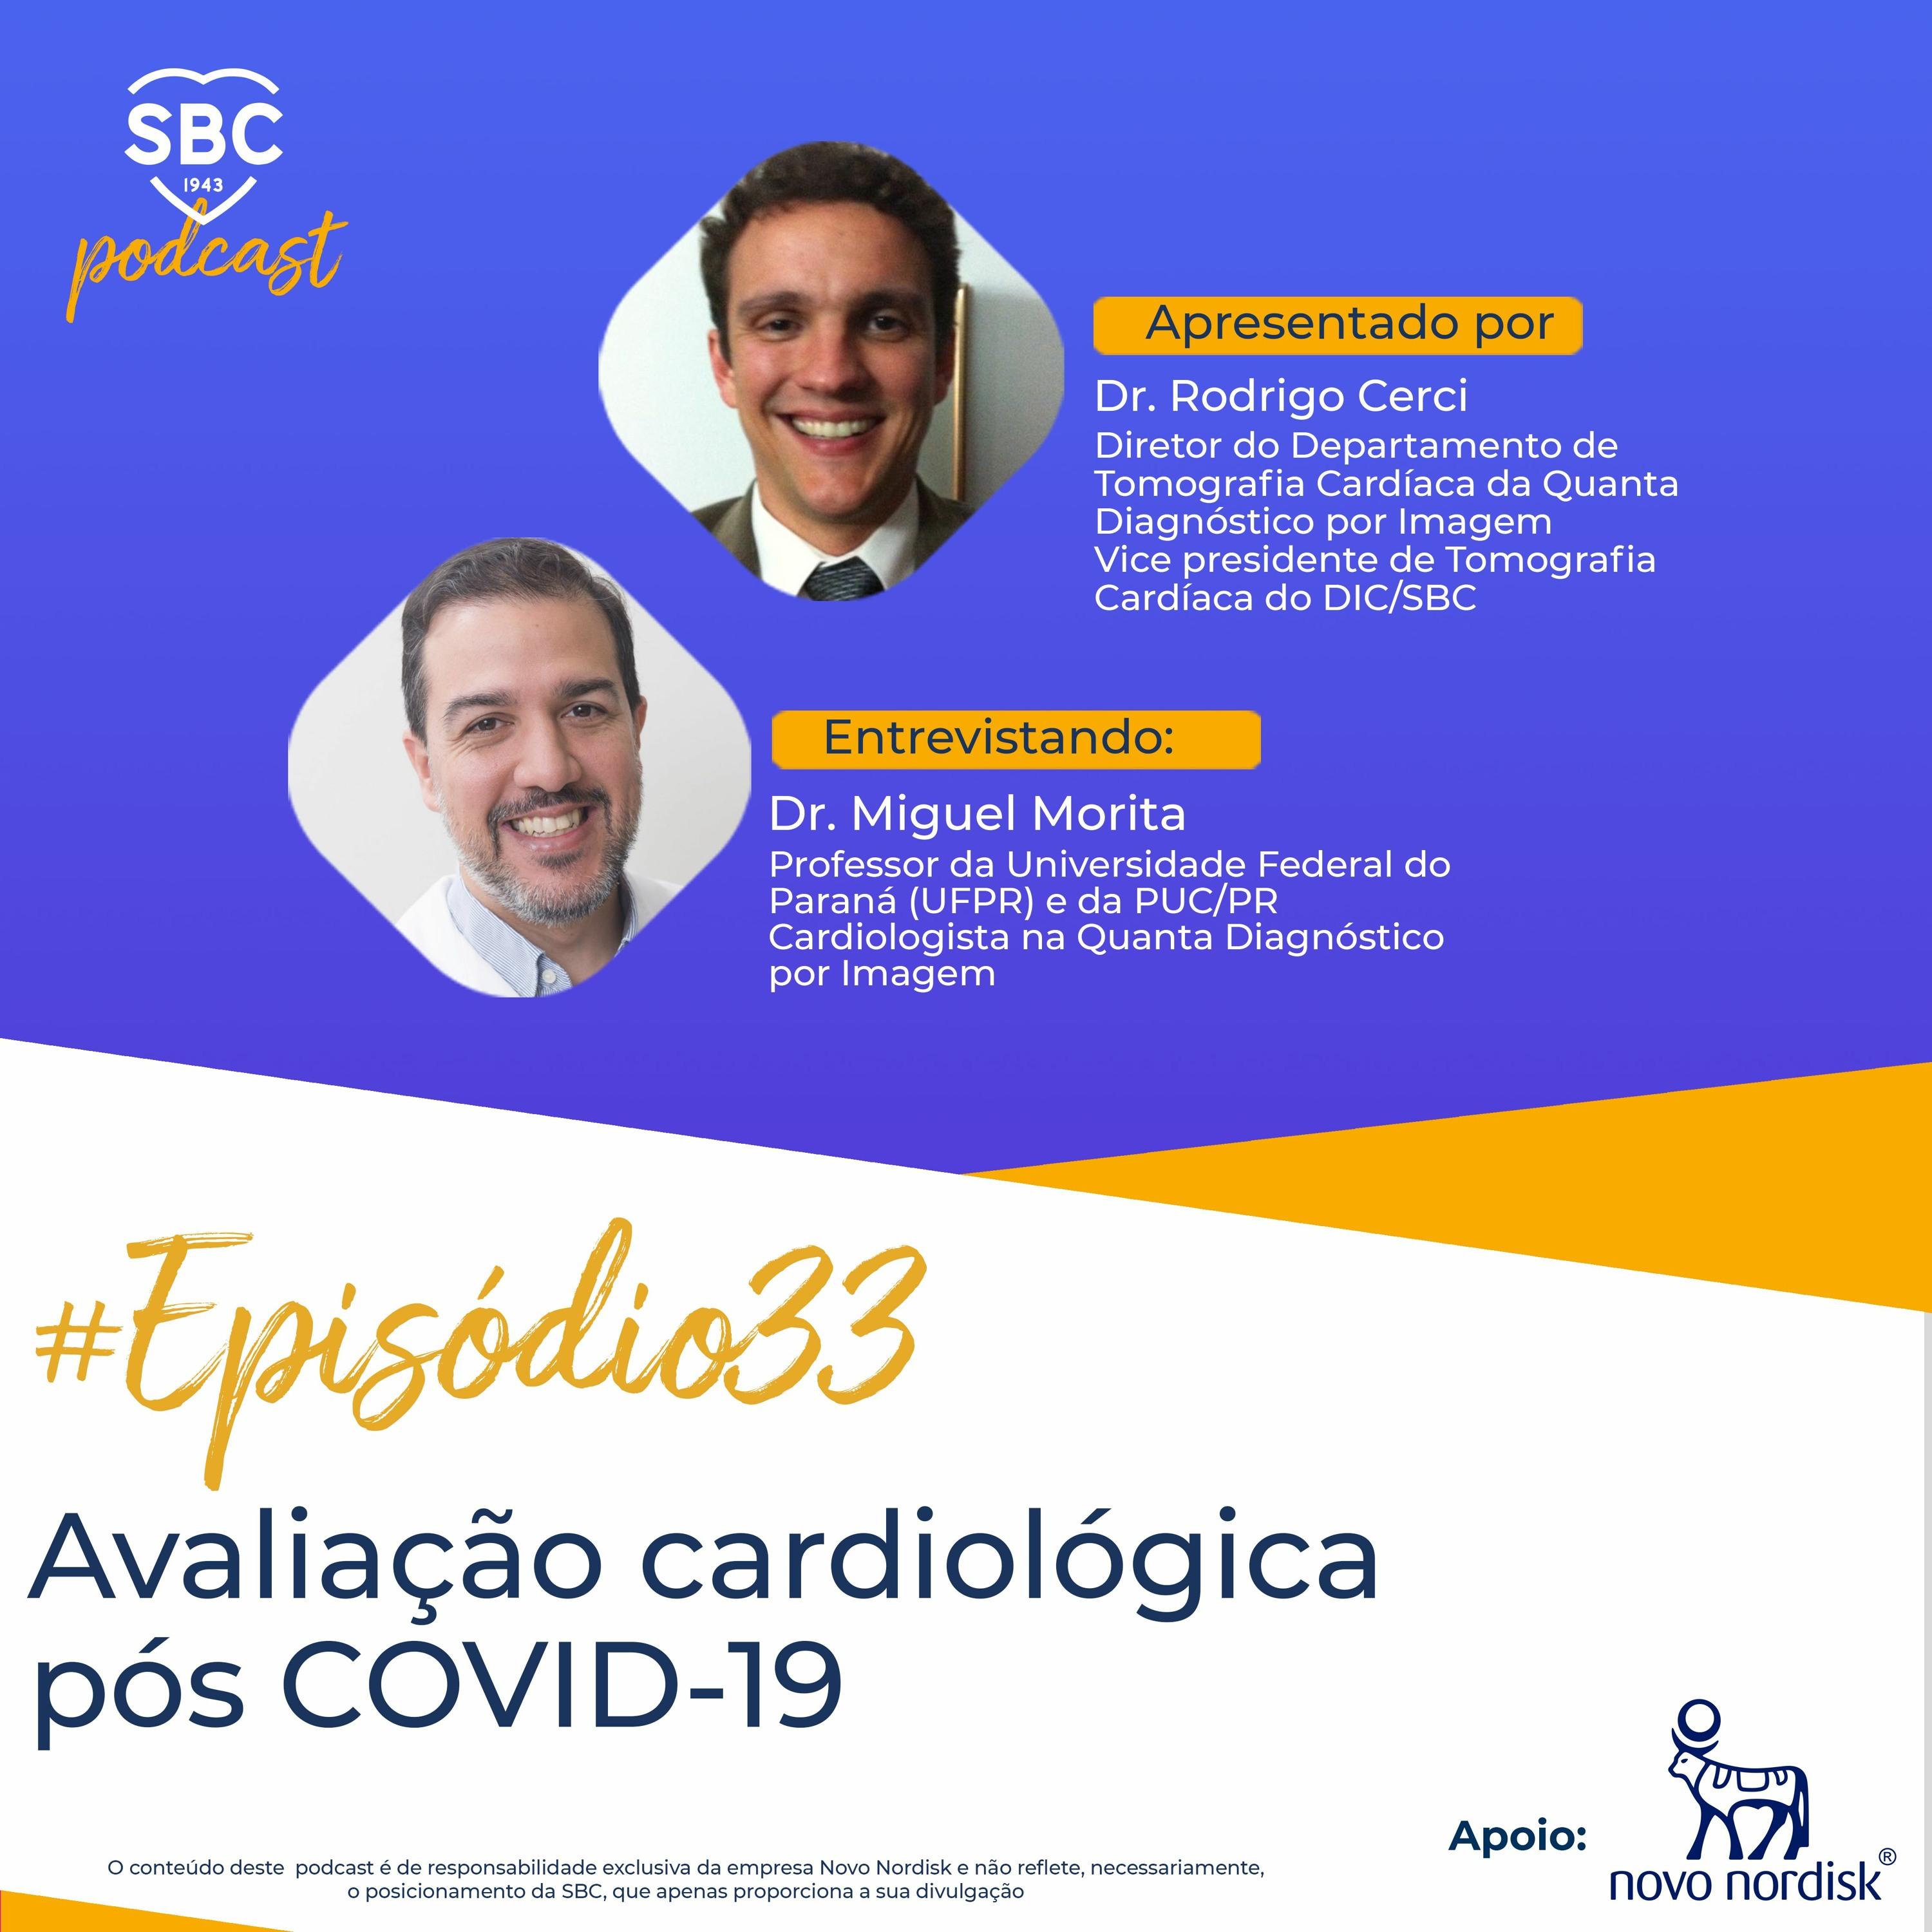 Neste episódio, os Profs. Rodrigo Cerci e Miguel Morita discutem o manejo das complicações cardiológicas na COVID-19.